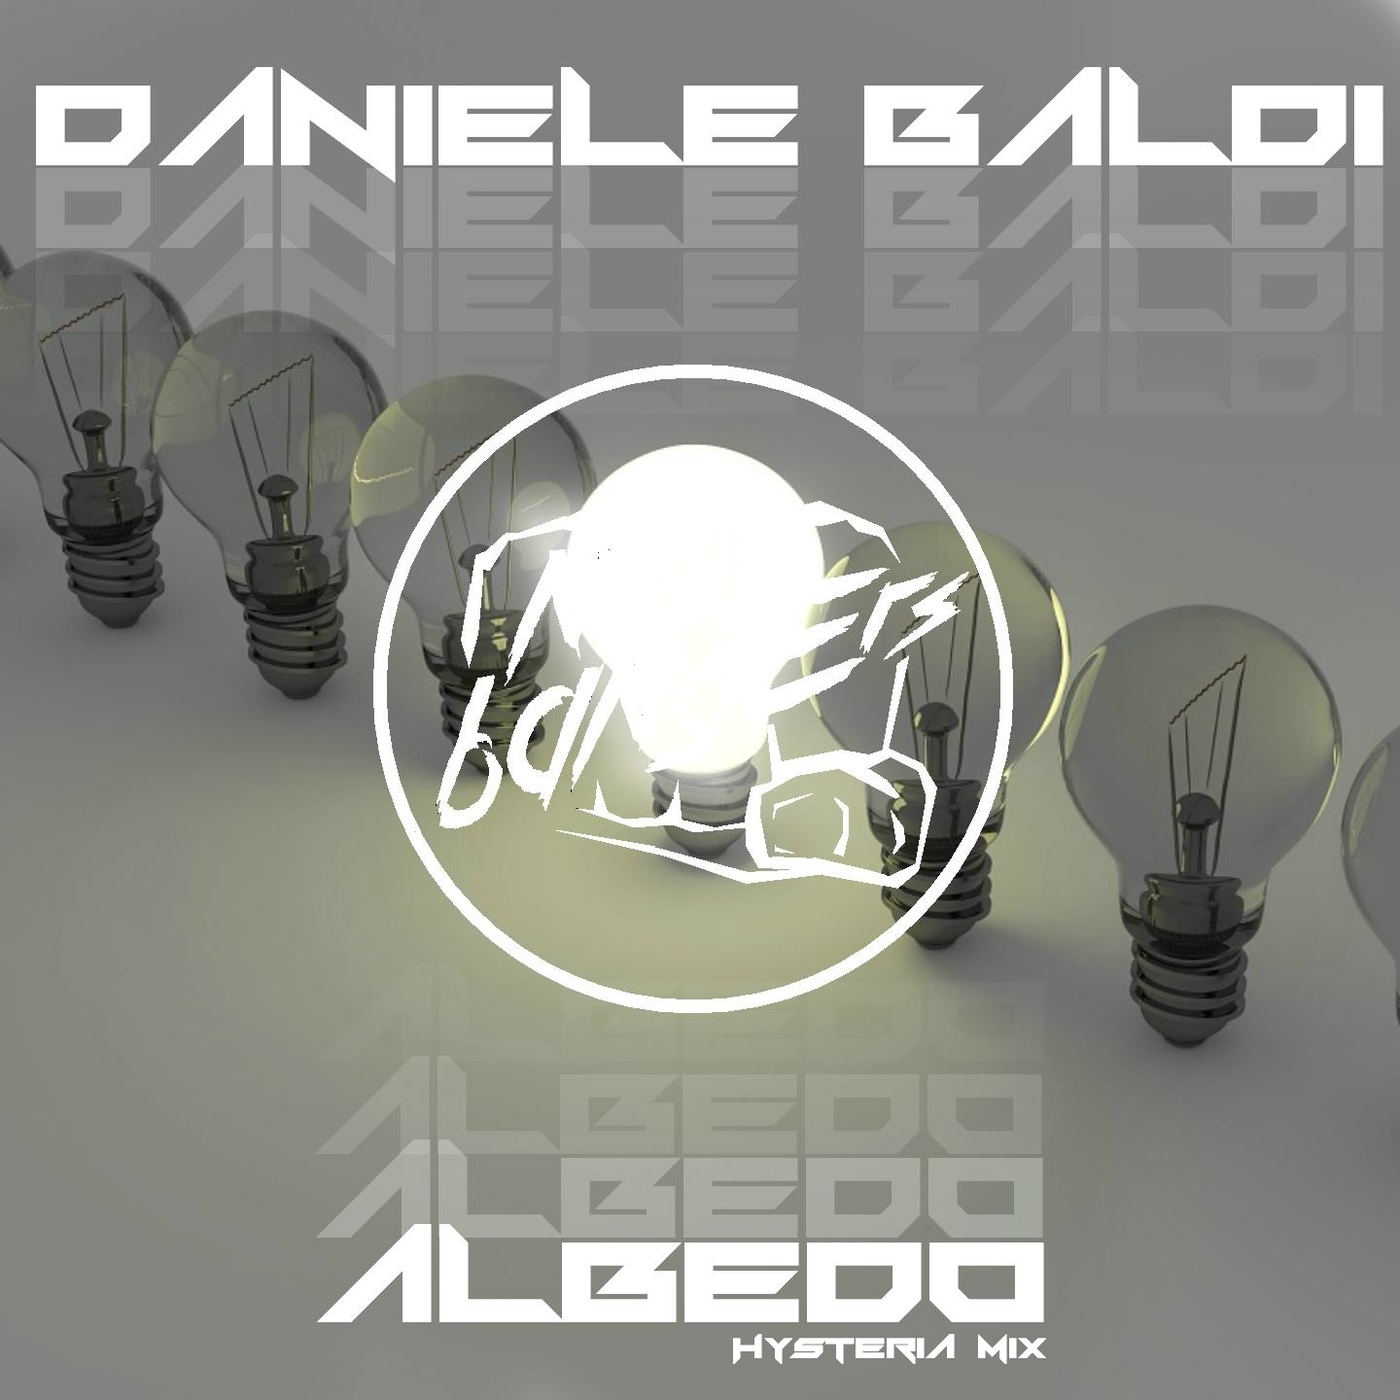 Daniele Baldi - Albedo (Hysteria Mix) / Noize Bangers